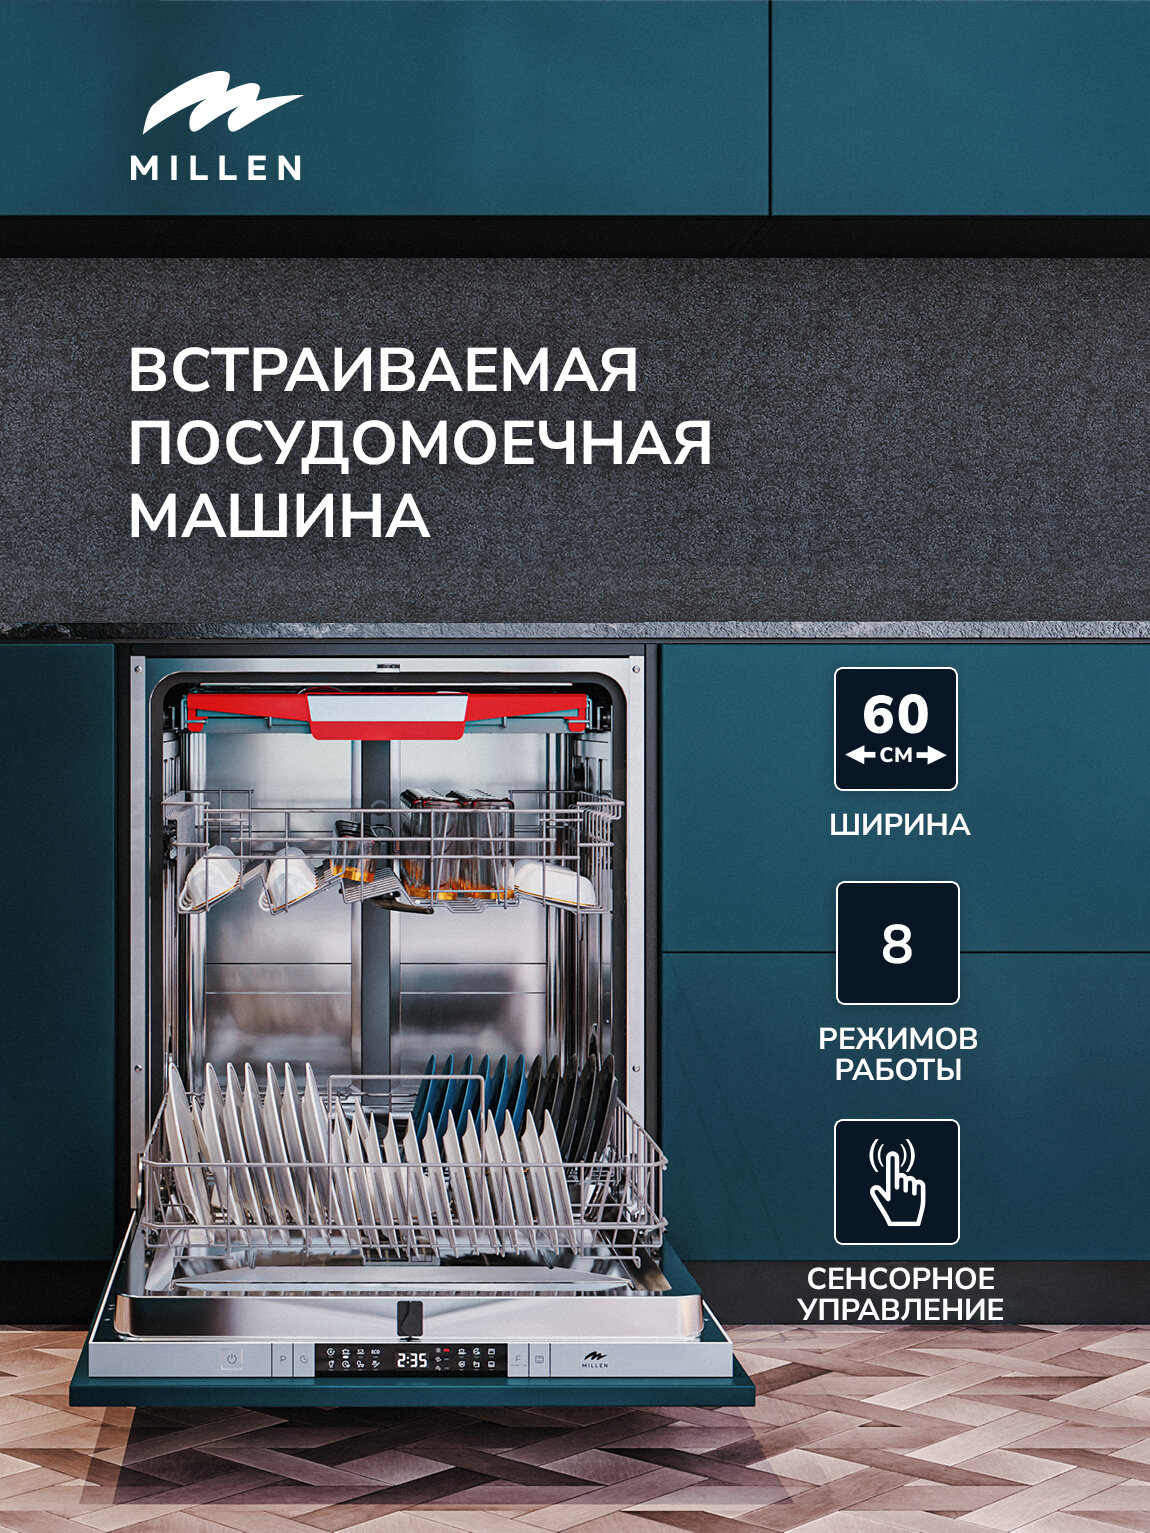 Встраиваемая посудомоечная машина MILLEN MDW 603, 60 см, инвертор, 3 лотка, автооткрытие, луч на полу, 15 комплектов